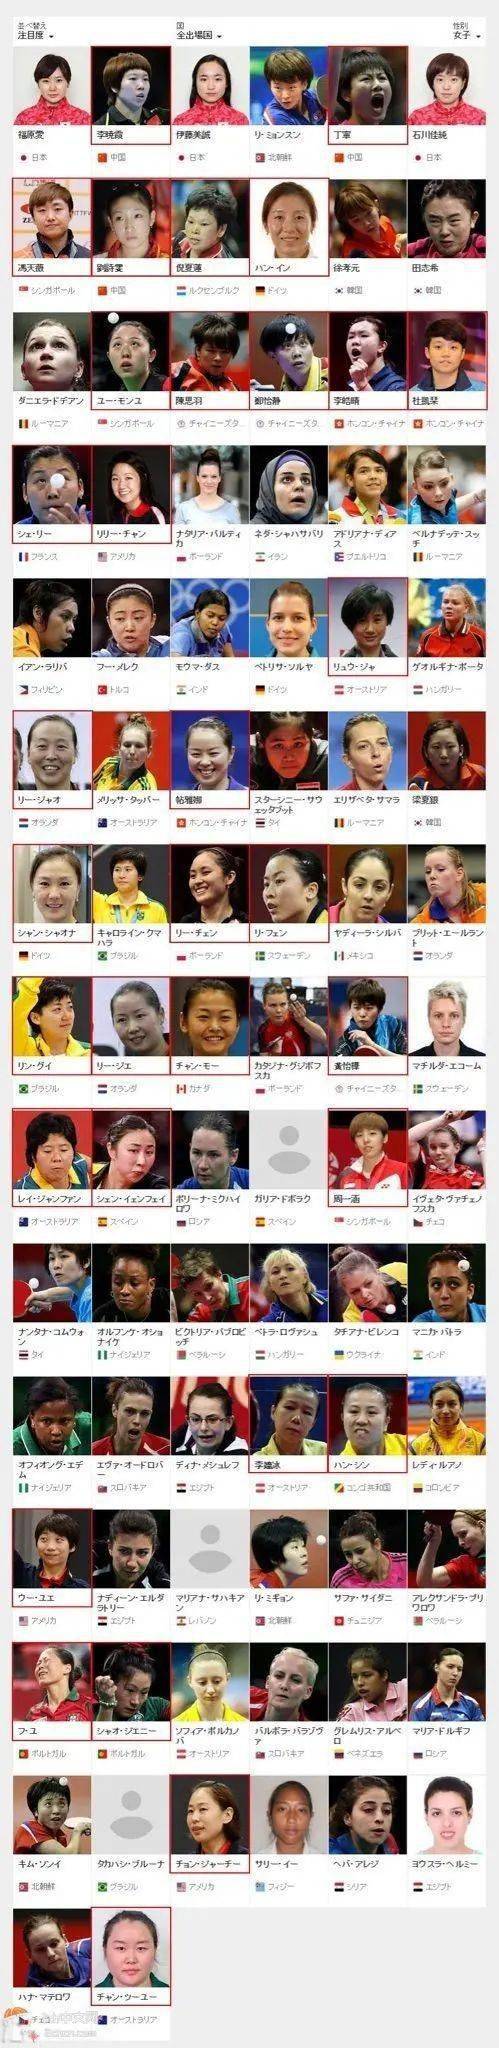 赛博体育-
中国人在乒乓球上面的统治力 或许真的难以想象